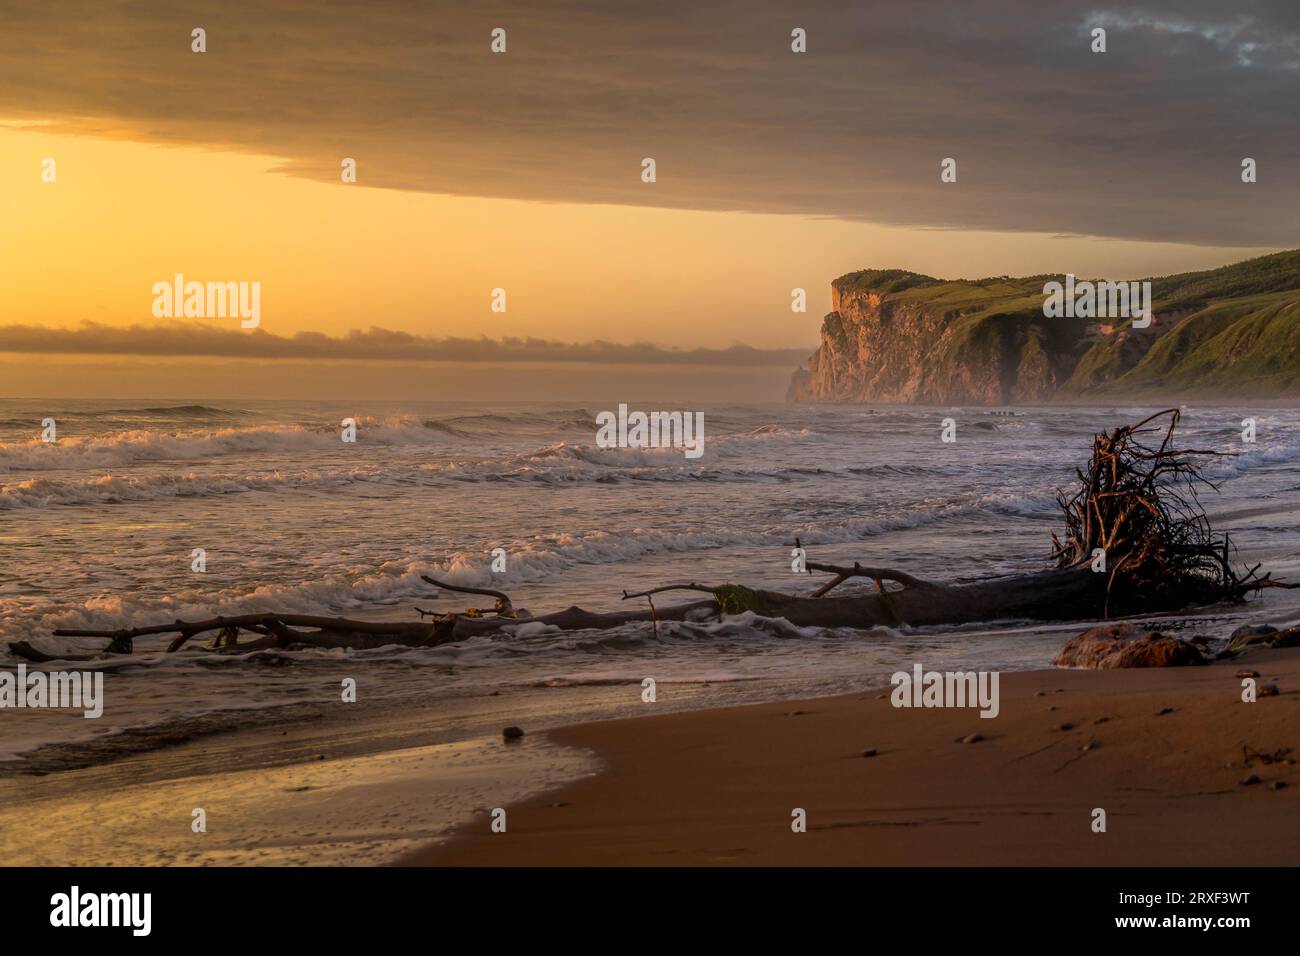 La plage de sable de la mer du Japon avec le rocher pittoresque sur le fond pendant le beau lever de soleil coloré dans la région de Primorsky, en Russie. Banque D'Images